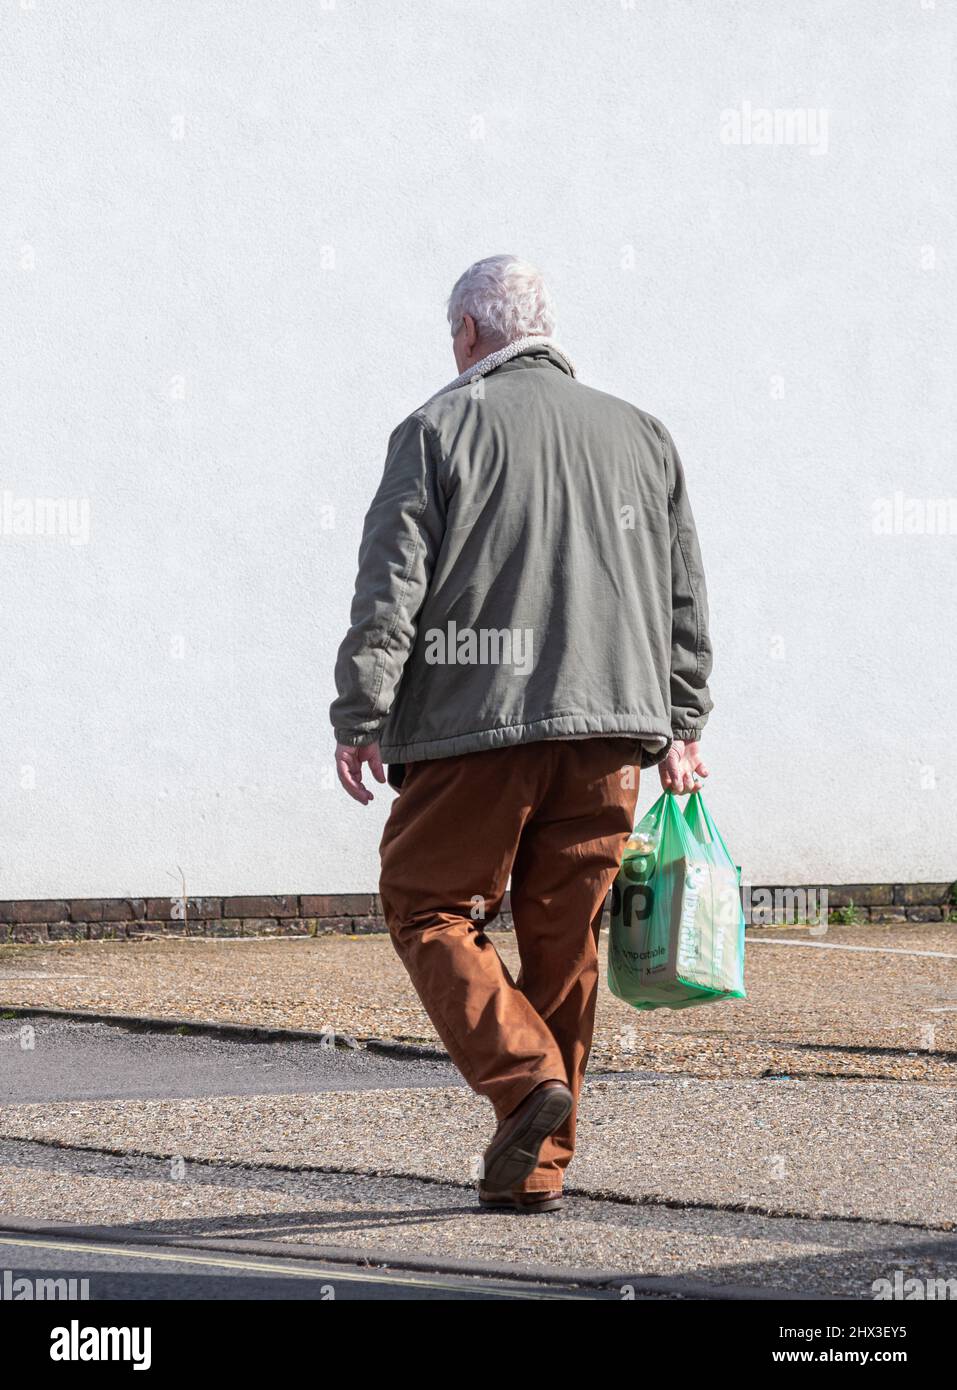 Älterer Mann, der aus dem Geschäft oder Geschäft zurückkommt und eine Co-op-Supermarkttasche aus Kunststoff trägt, Großbritannien Stockfoto